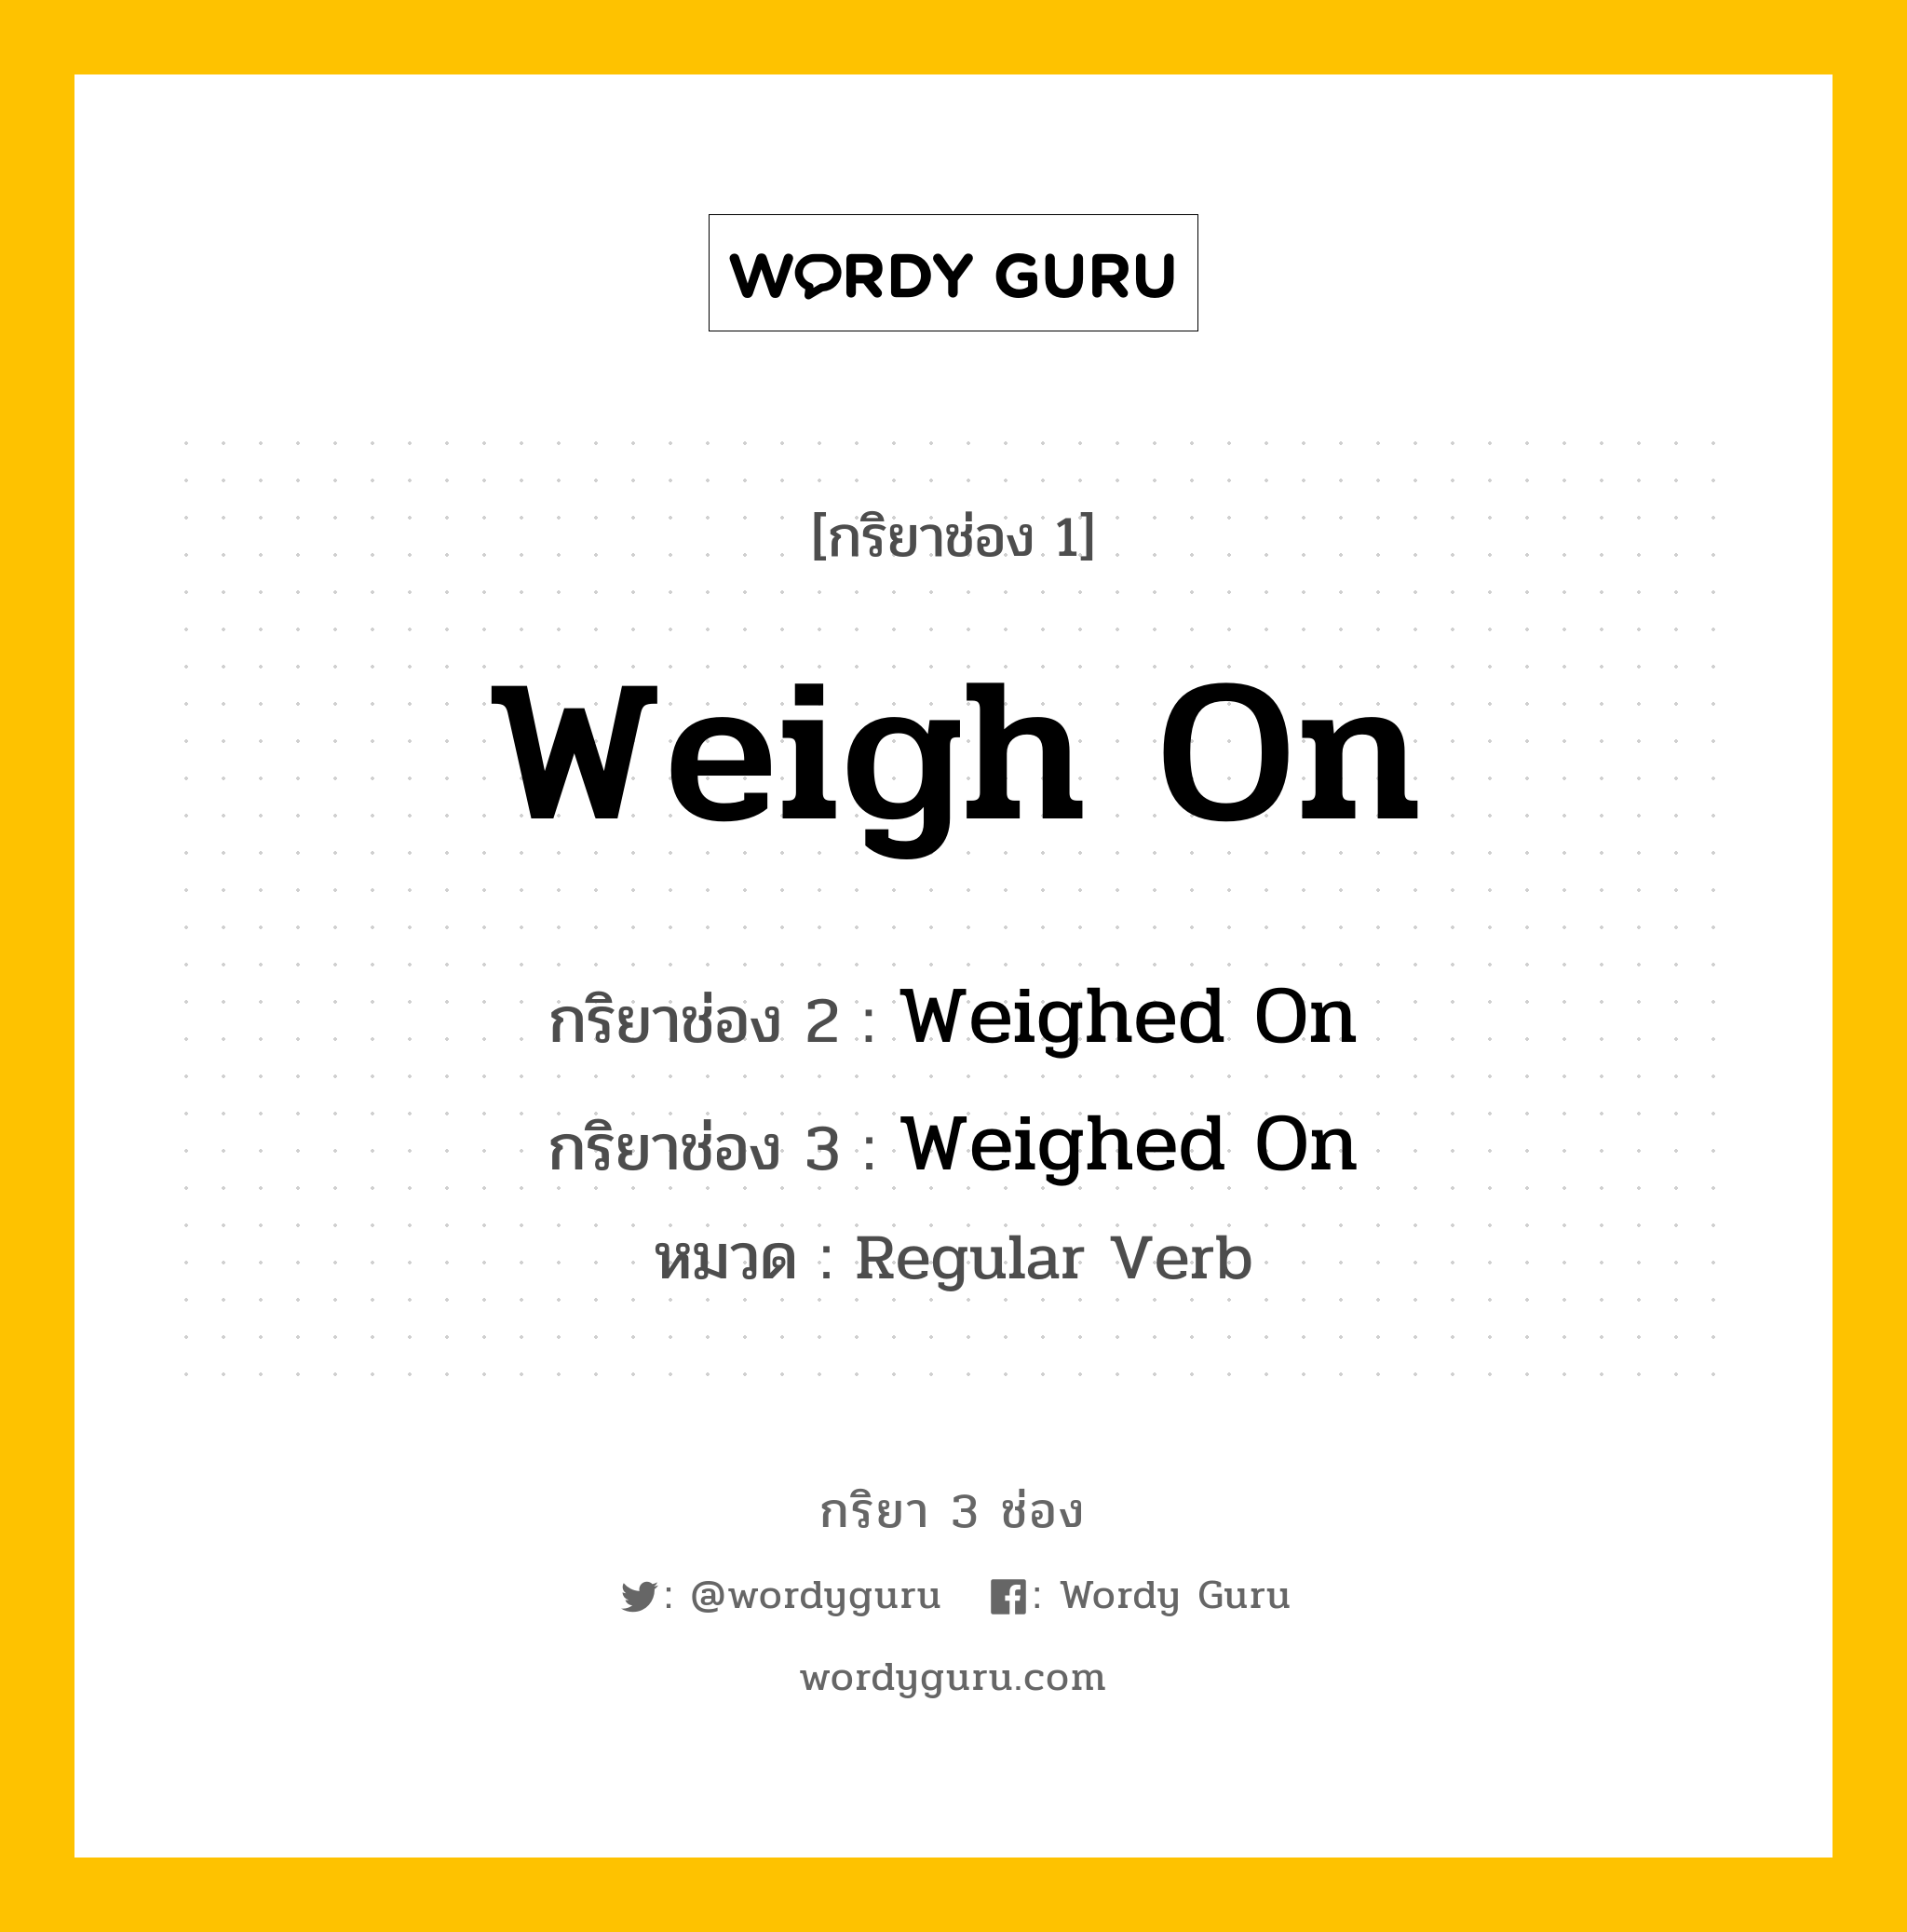 กริยา 3 ช่อง: Weigh On ช่อง 2 Weigh On ช่อง 3 คืออะไร, กริยาช่อง 1 Weigh On กริยาช่อง 2 Weighed On กริยาช่อง 3 Weighed On หมวด Regular Verb หมวด Regular Verb